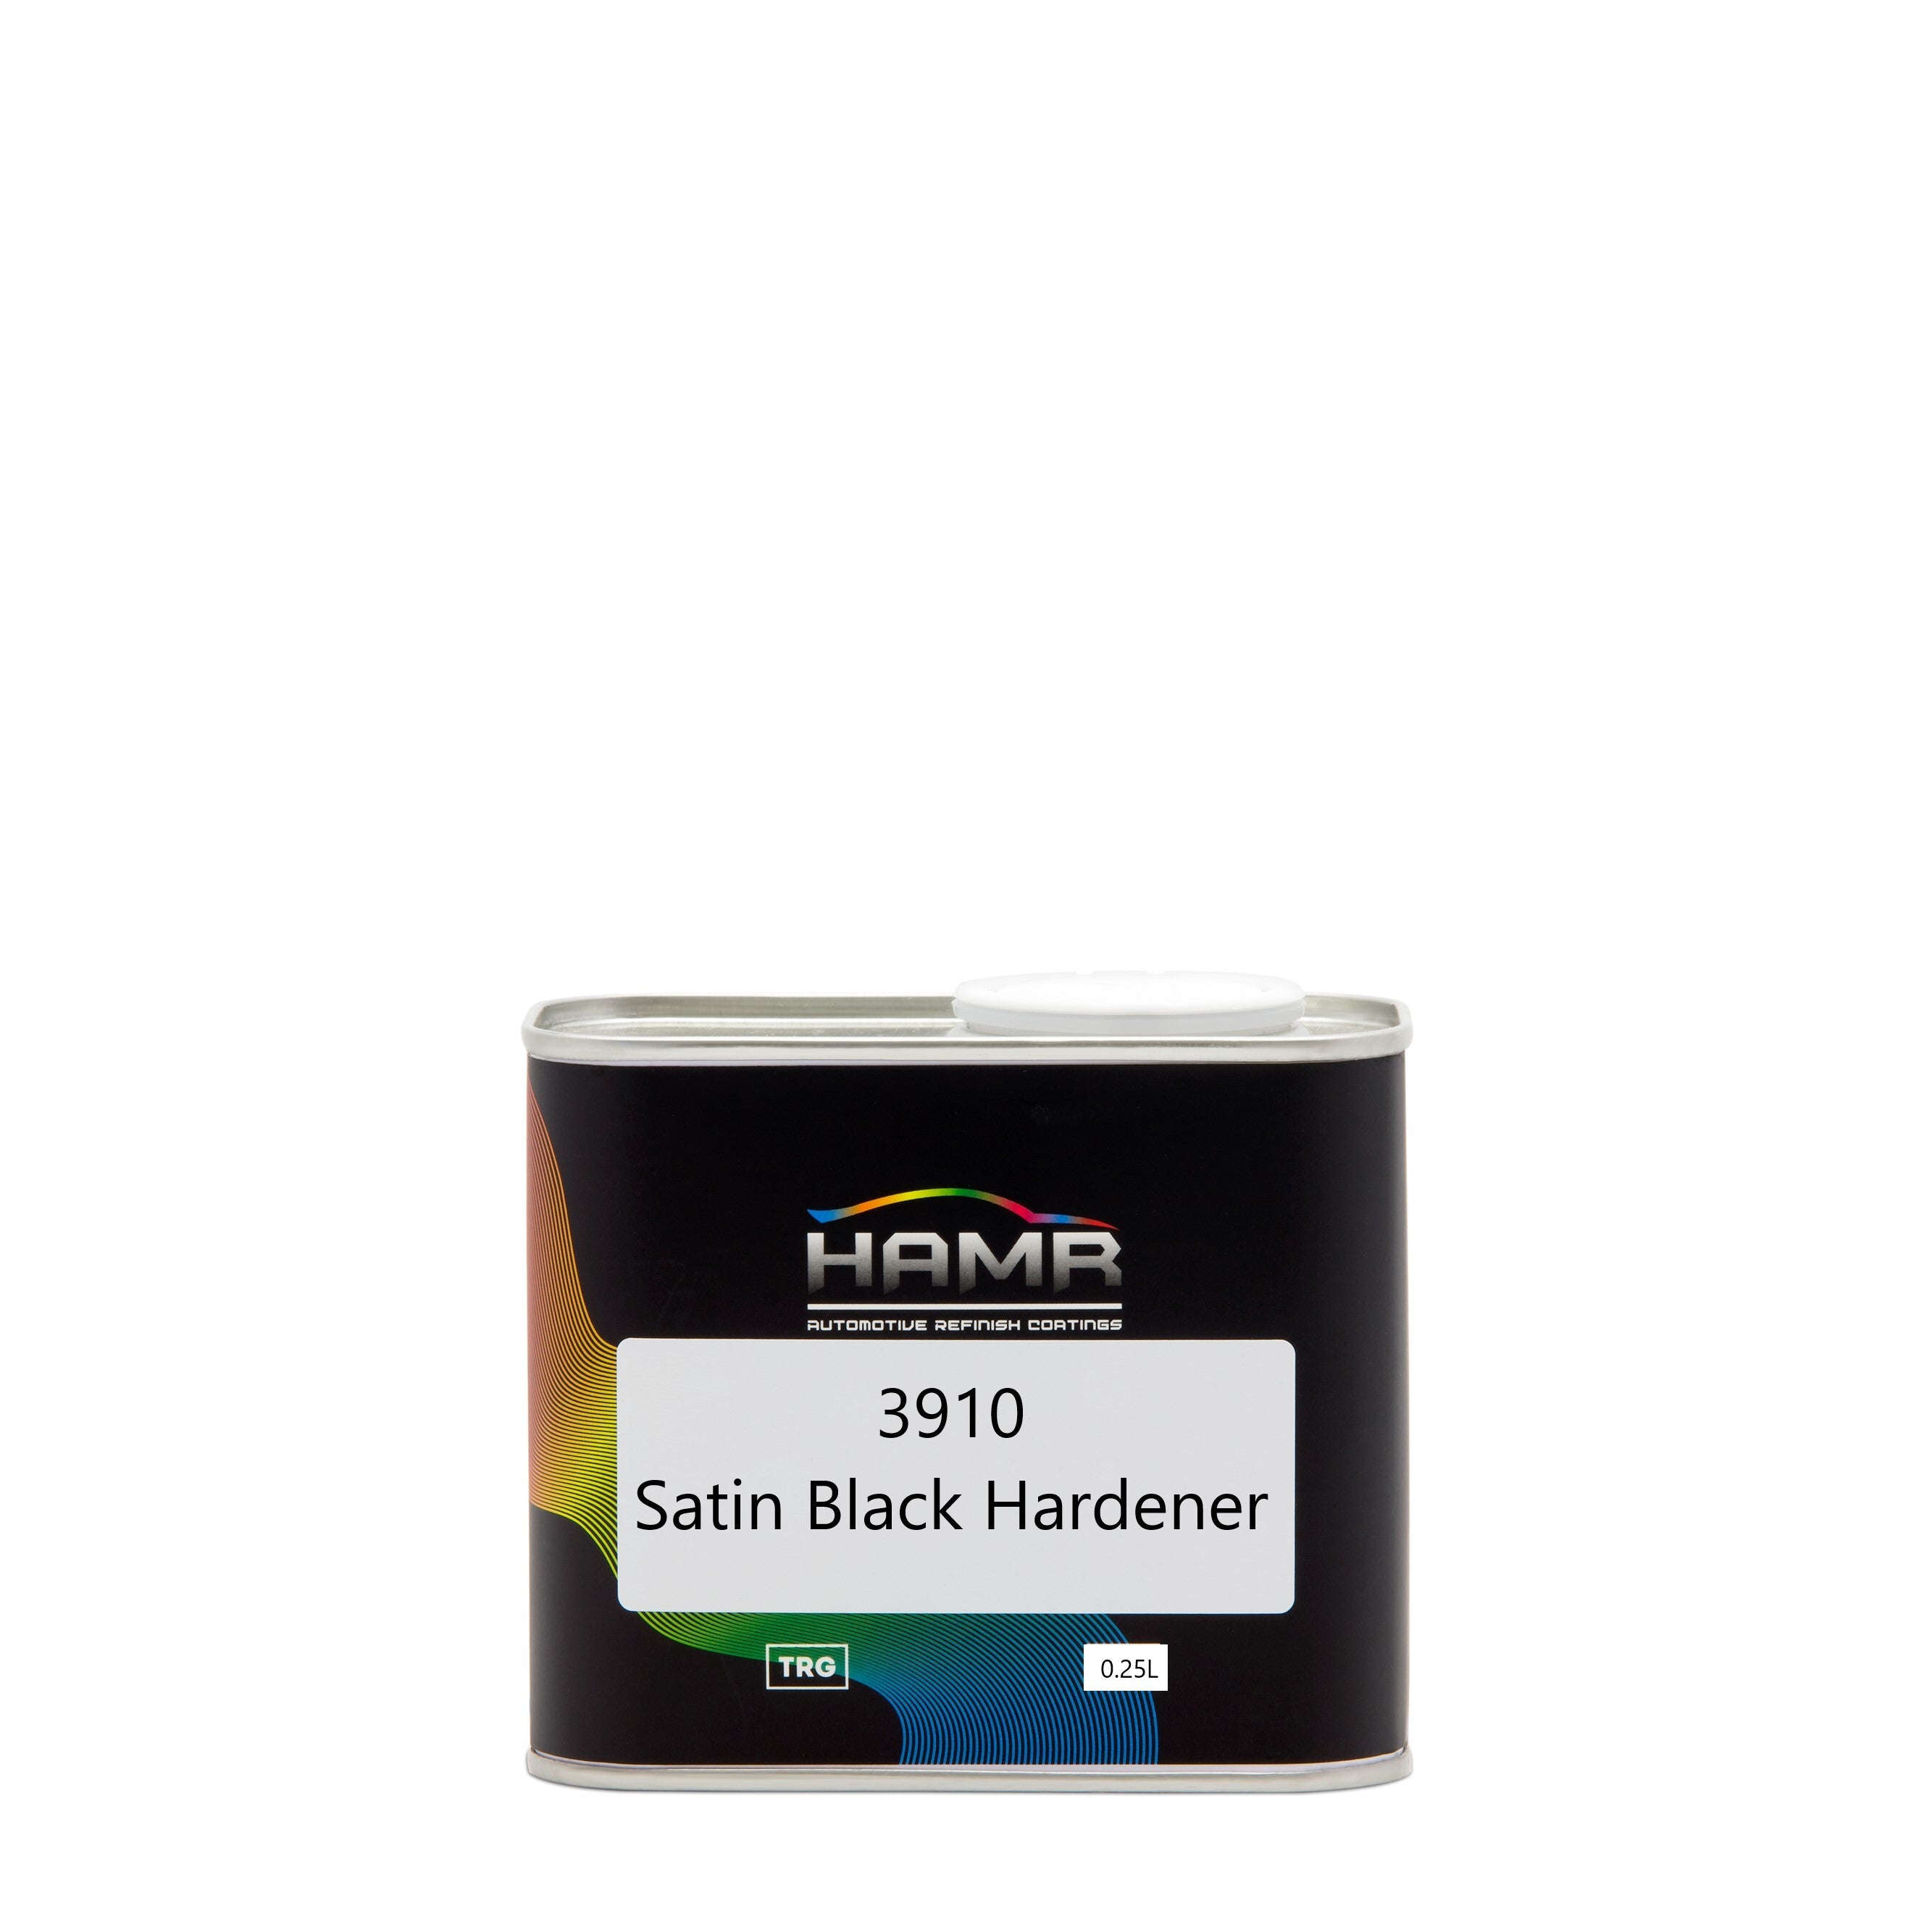 3910 SATIN BLACK HARDENER